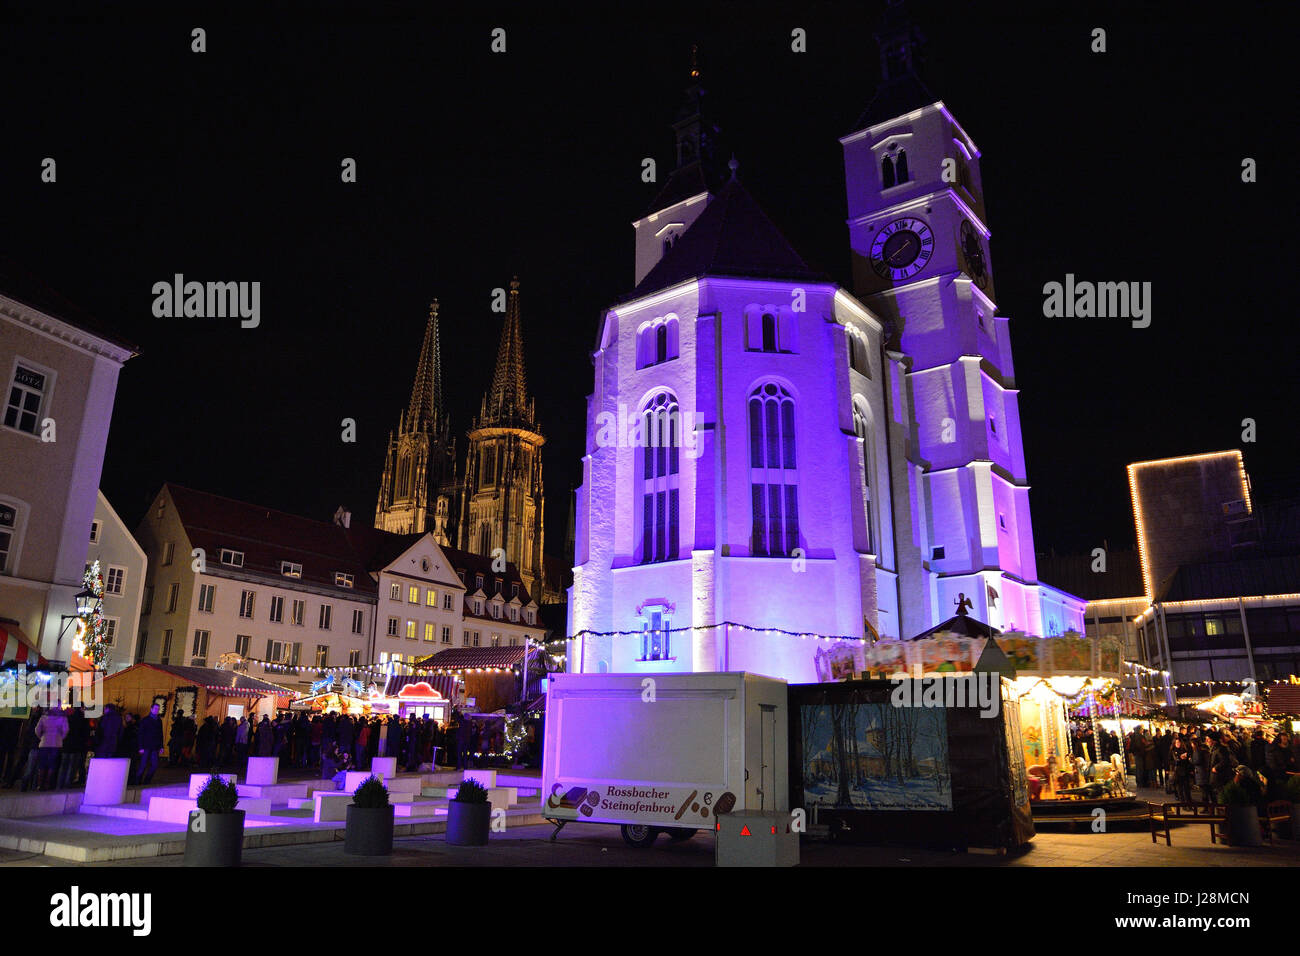 Allemagne, Bavière, Regensburg, Marché de Noël, Regenscastle appartient au patrimoine culturel mondial de l'UNESCO Banque D'Images